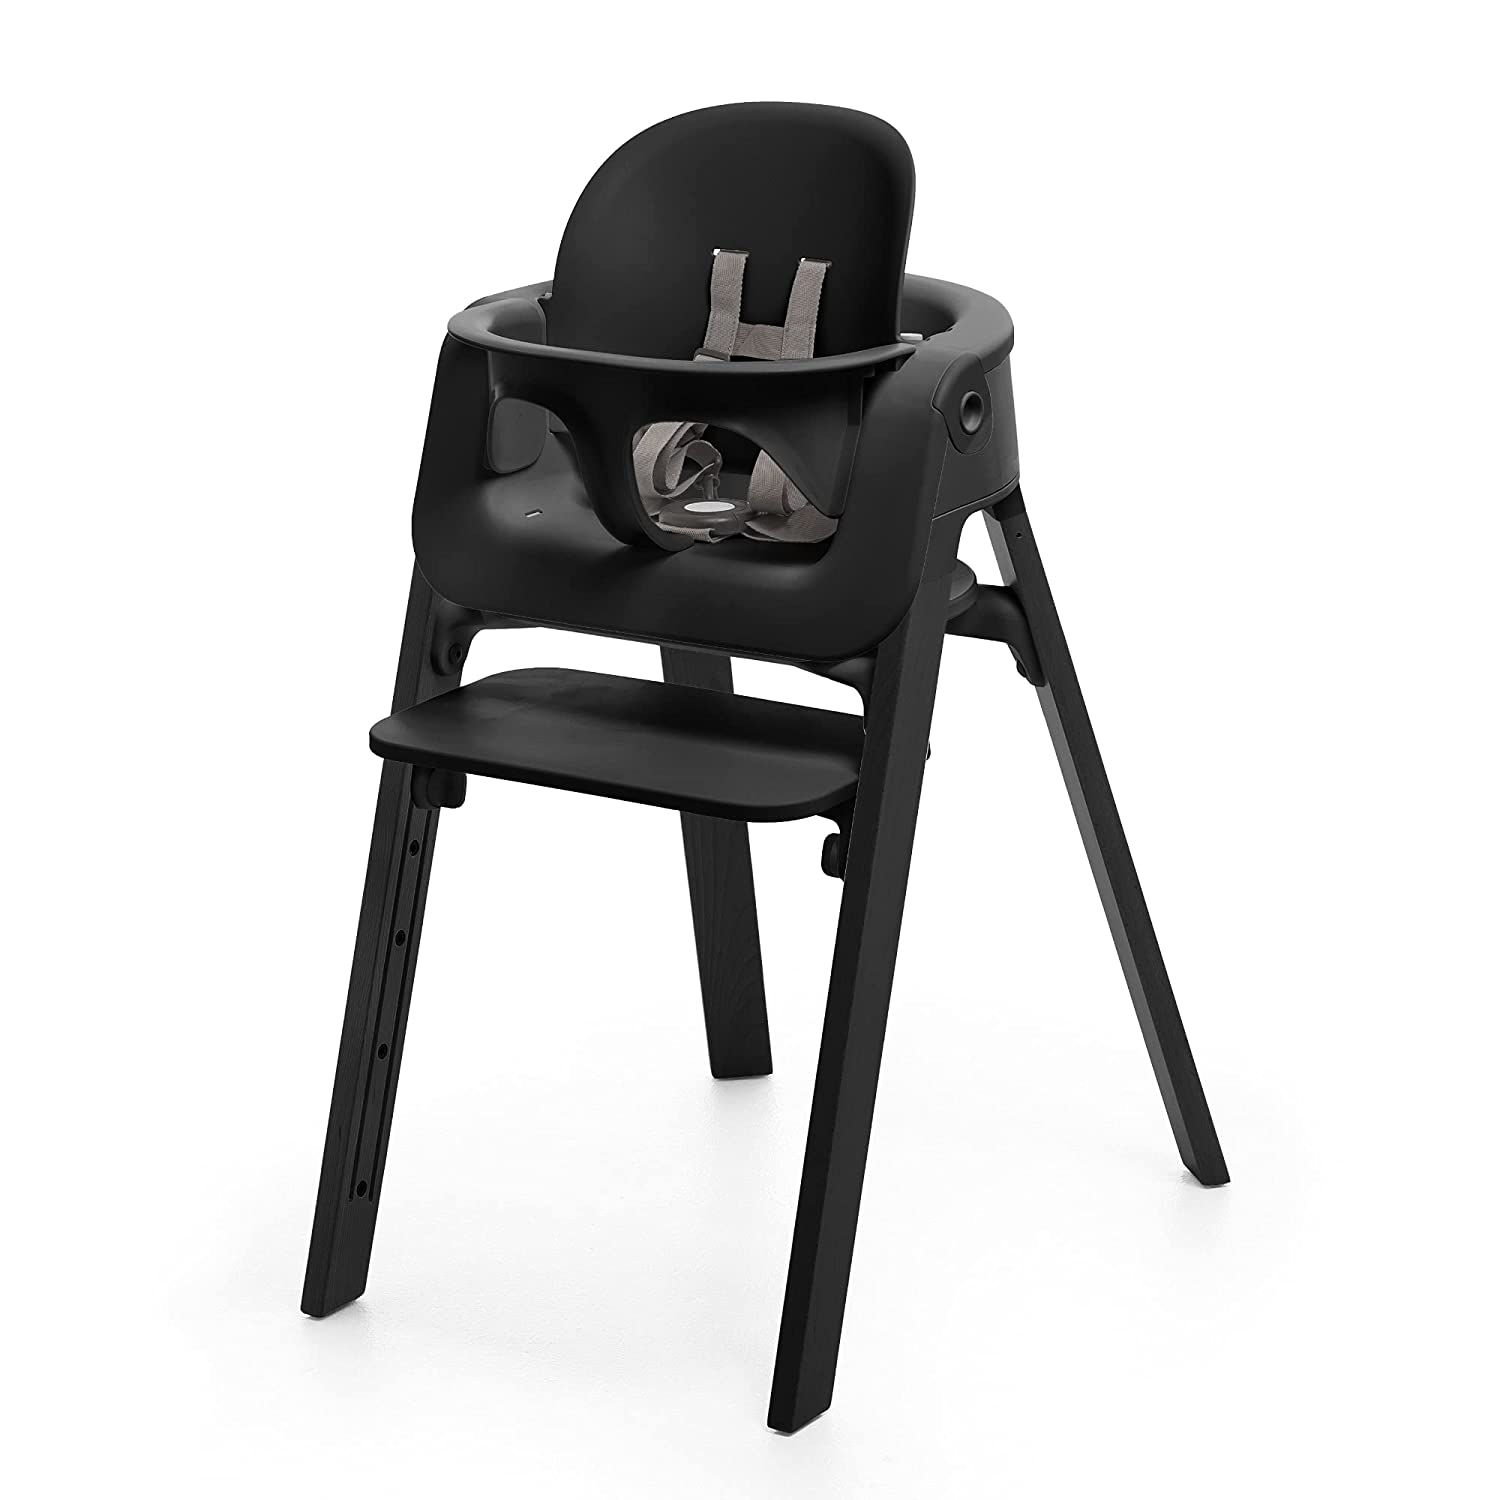 أهمية التصميم المريح في الكراسي العالية: دعم الوضعية المناسبة للأطفال